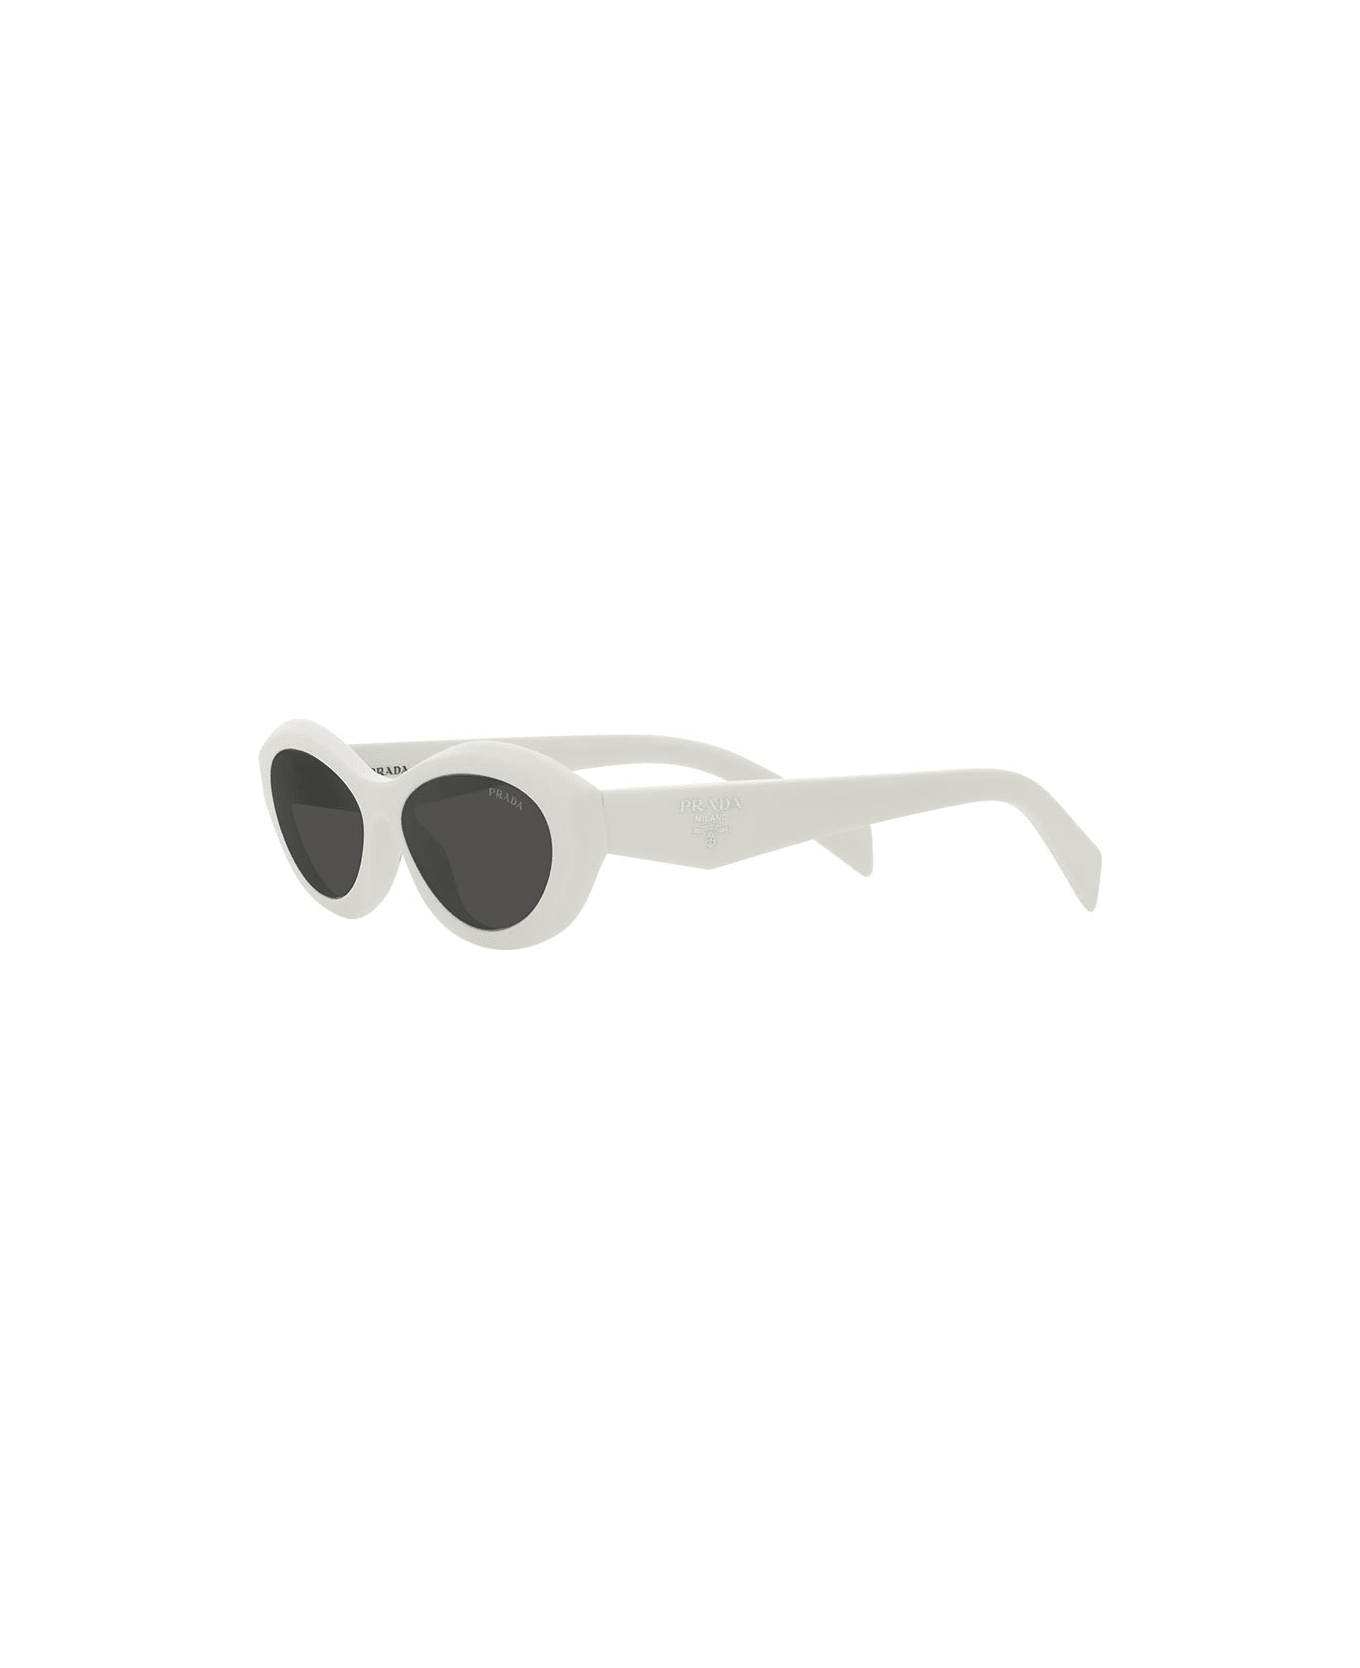 Prada Eyewear Sunglasses - 17K08Z